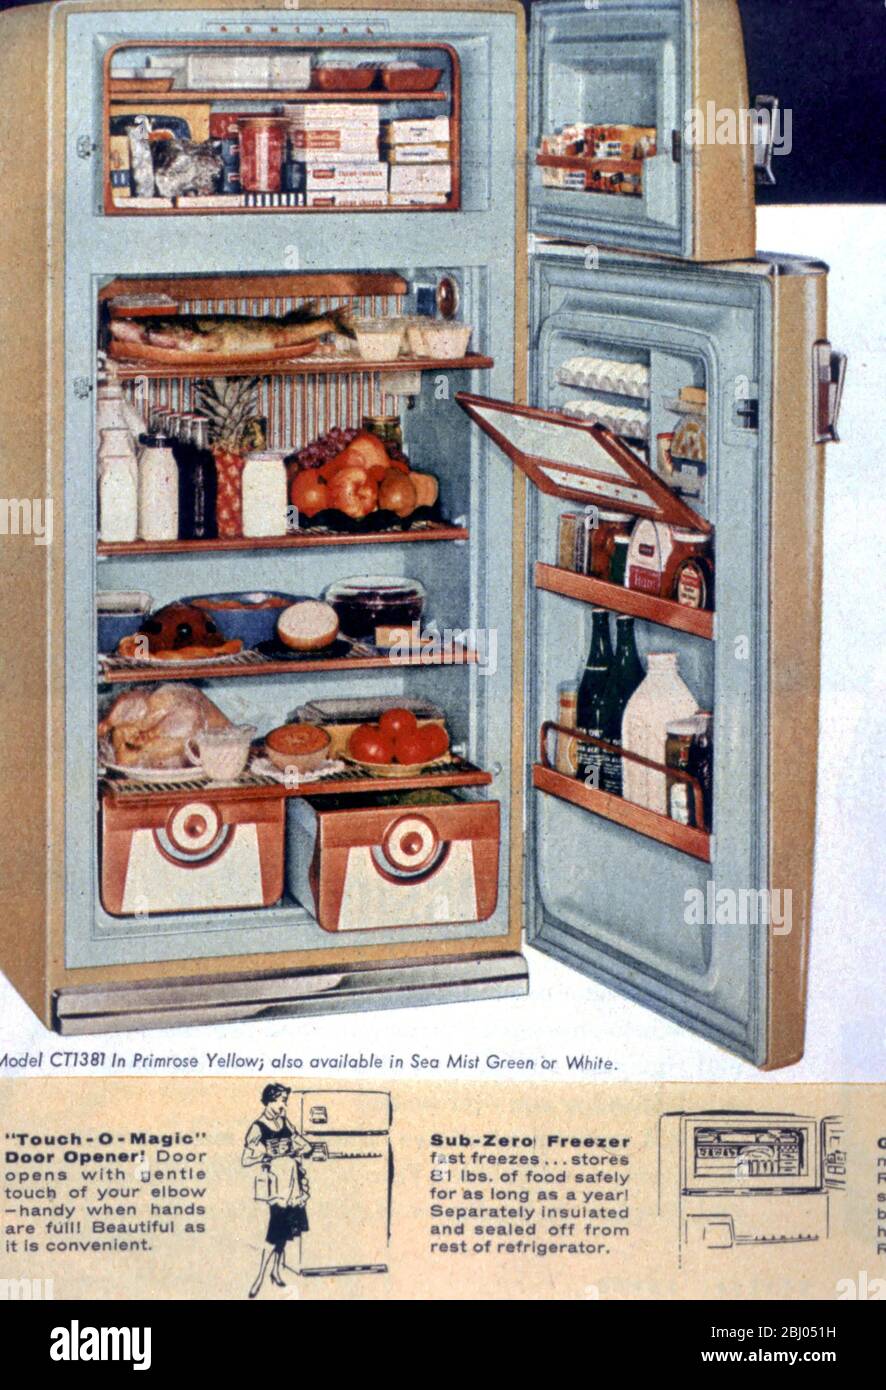 USA - publicité pour réfrigérateur de style années 1950 - Banque D'Images